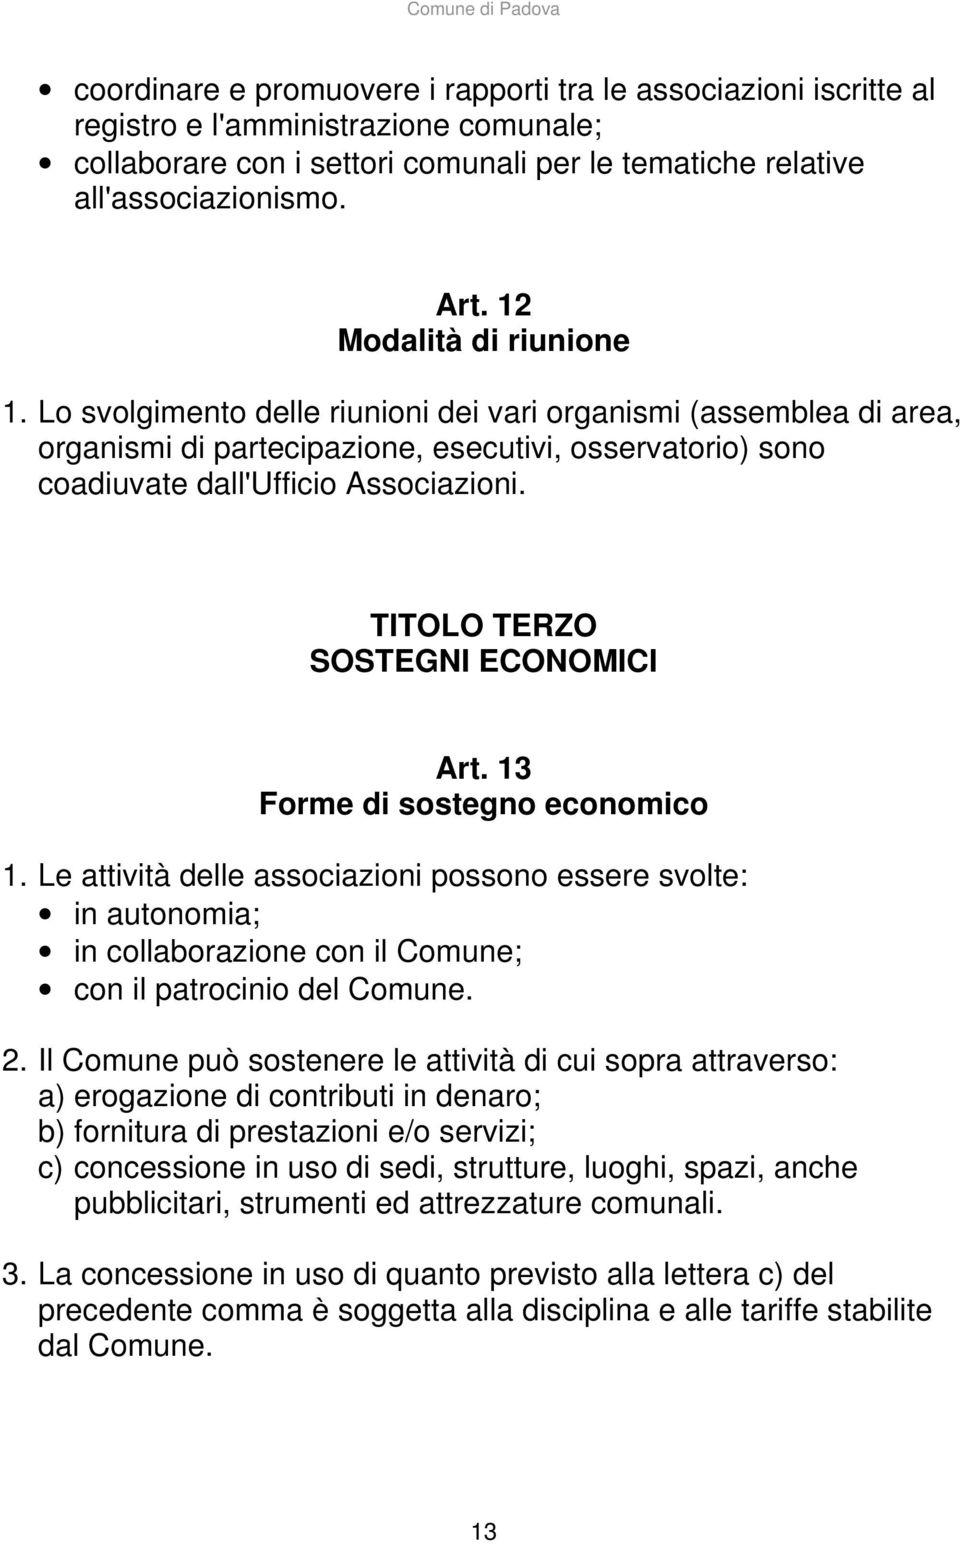 TITOLO TERZO SOSTEGNI ECONOMICI Art. 13 Forme di sostegno economico 1.